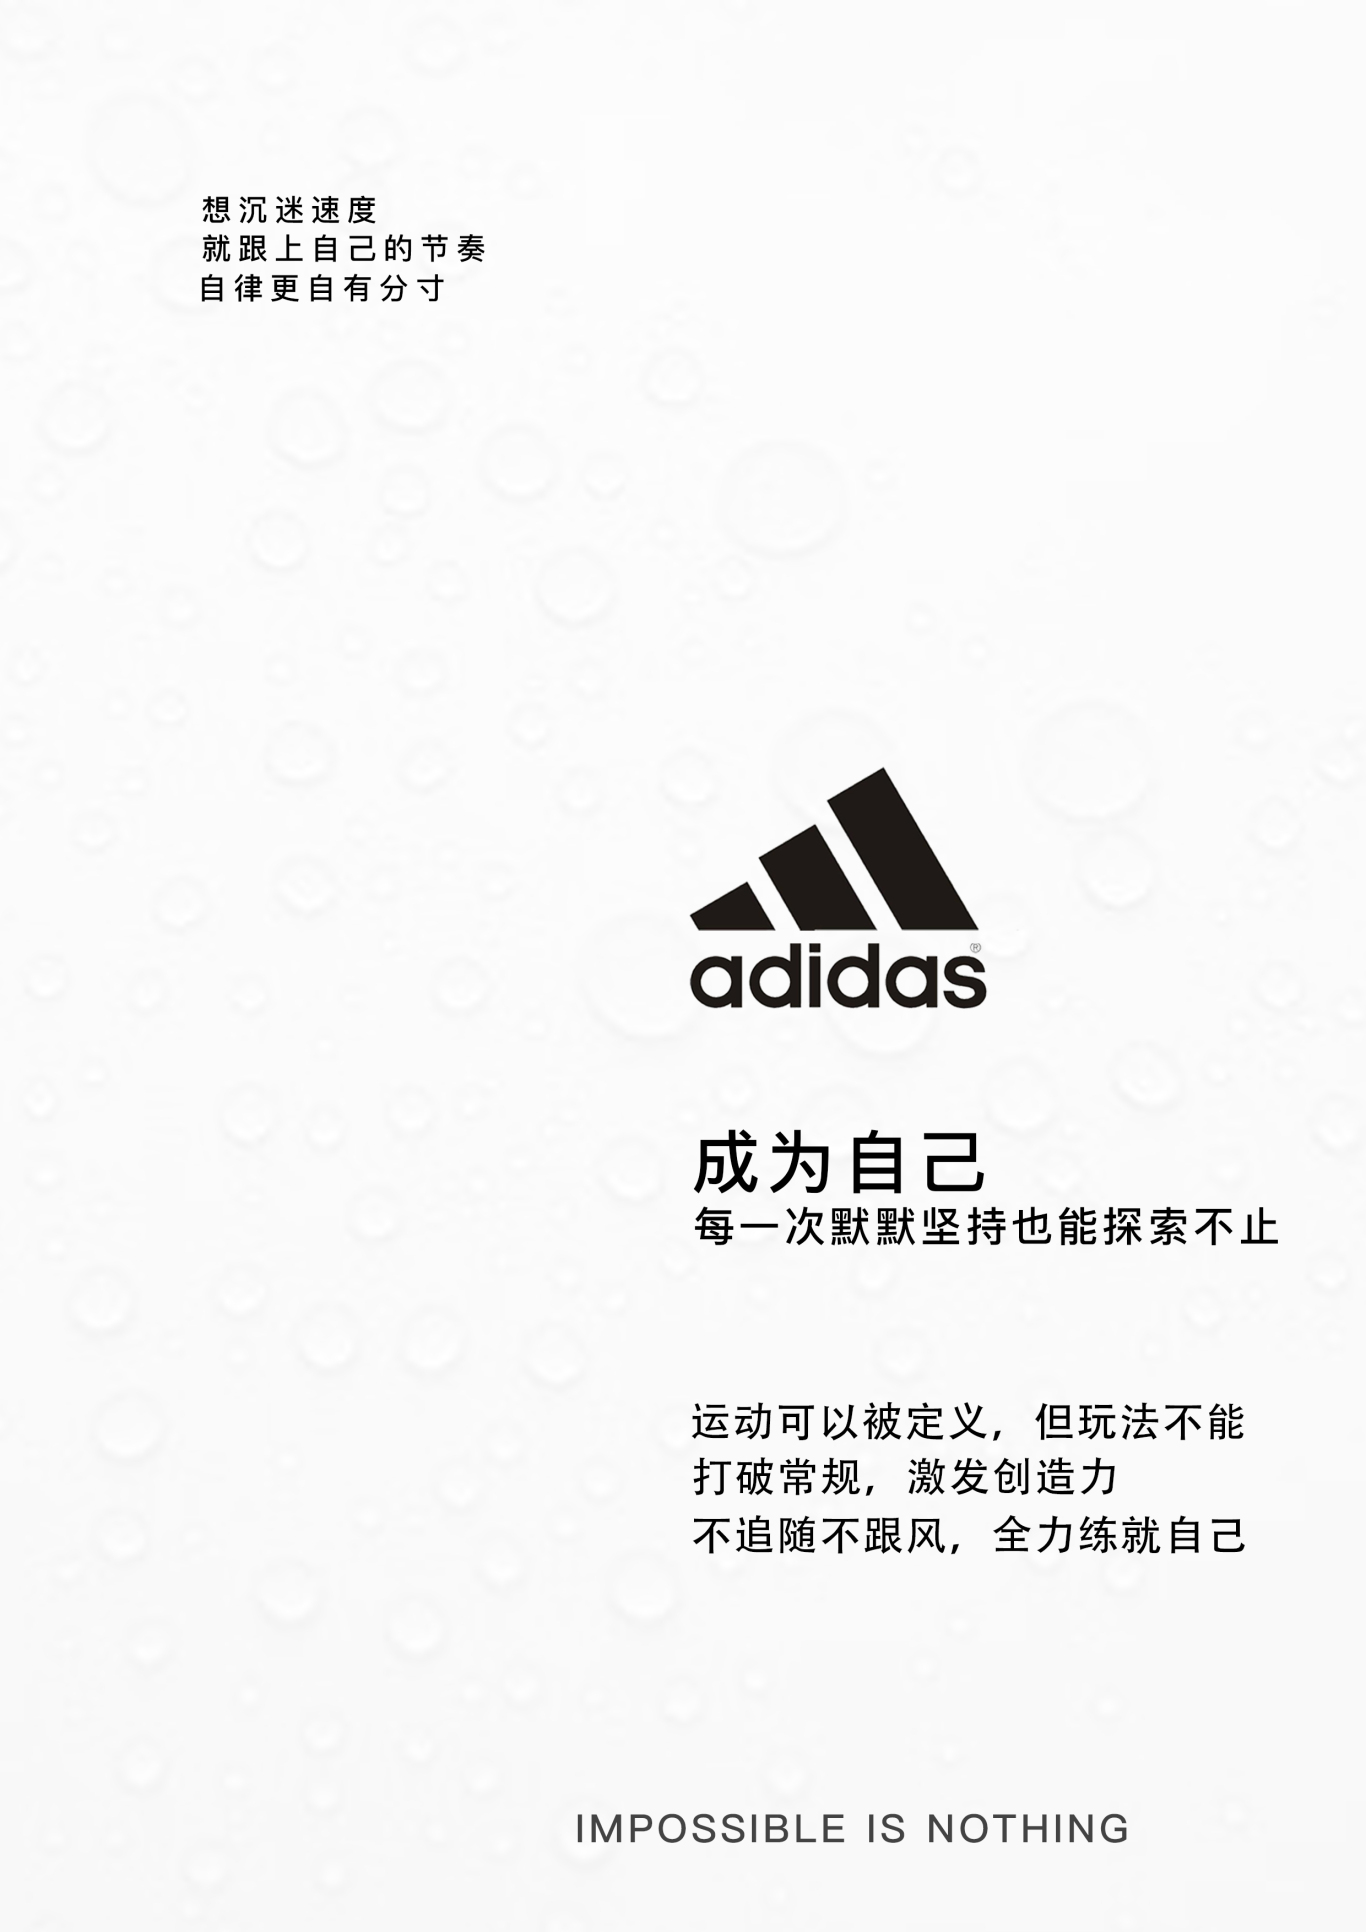 adidas产品型录设计图1